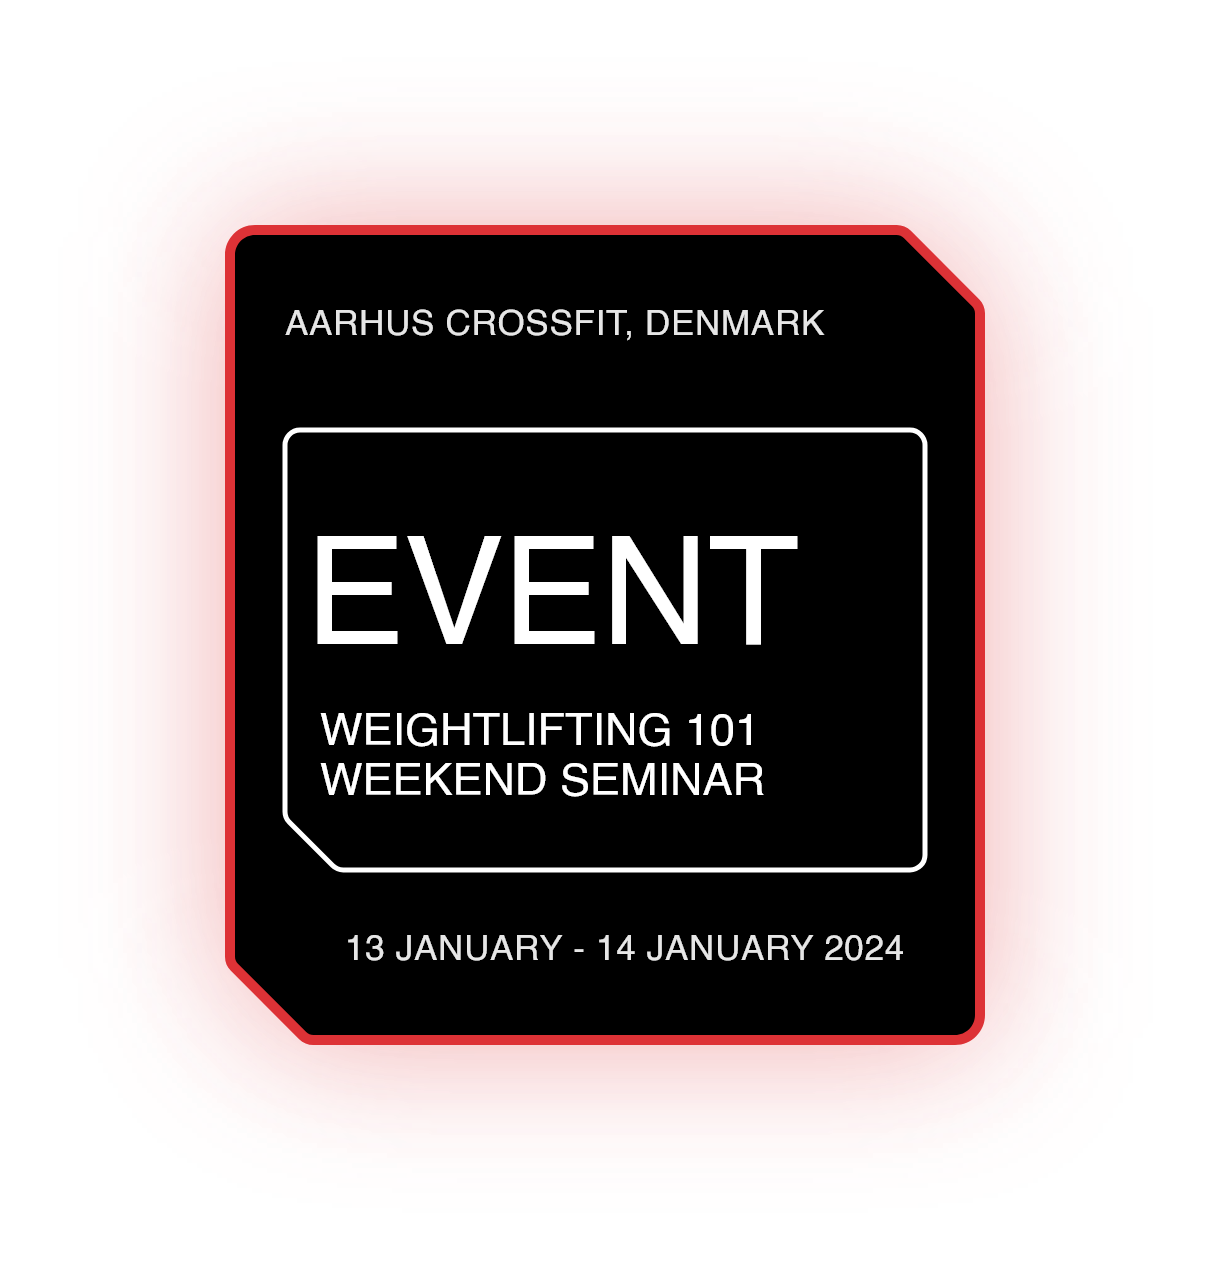 Weightlifting 101 Weekend Seminar - Aarhus, Denmark